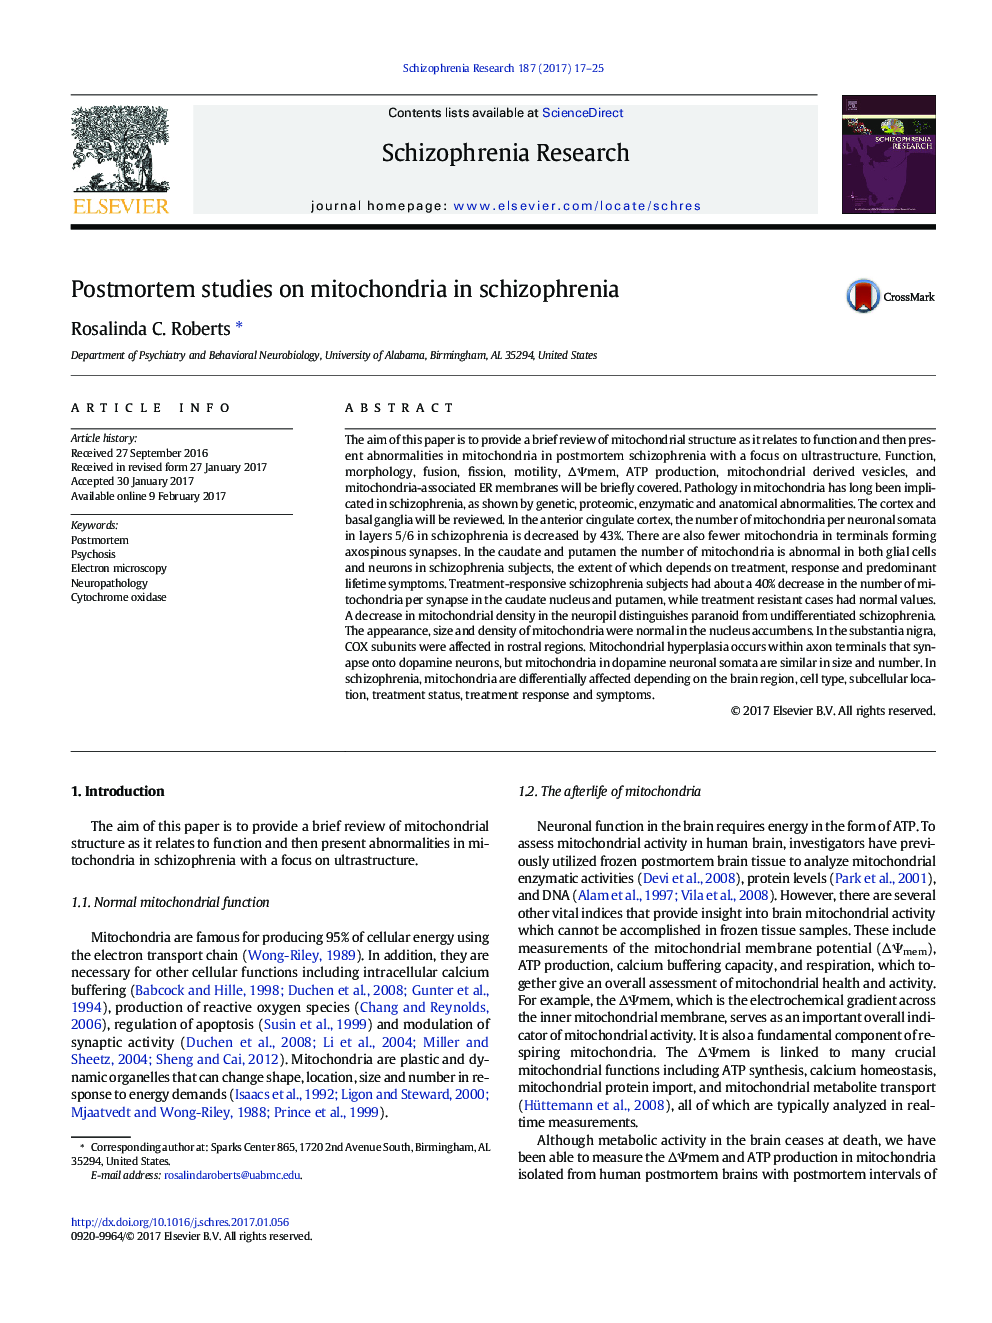 مطالعات پس از مداخله در مورد میتوکندری در اسکیزوفرنیا 